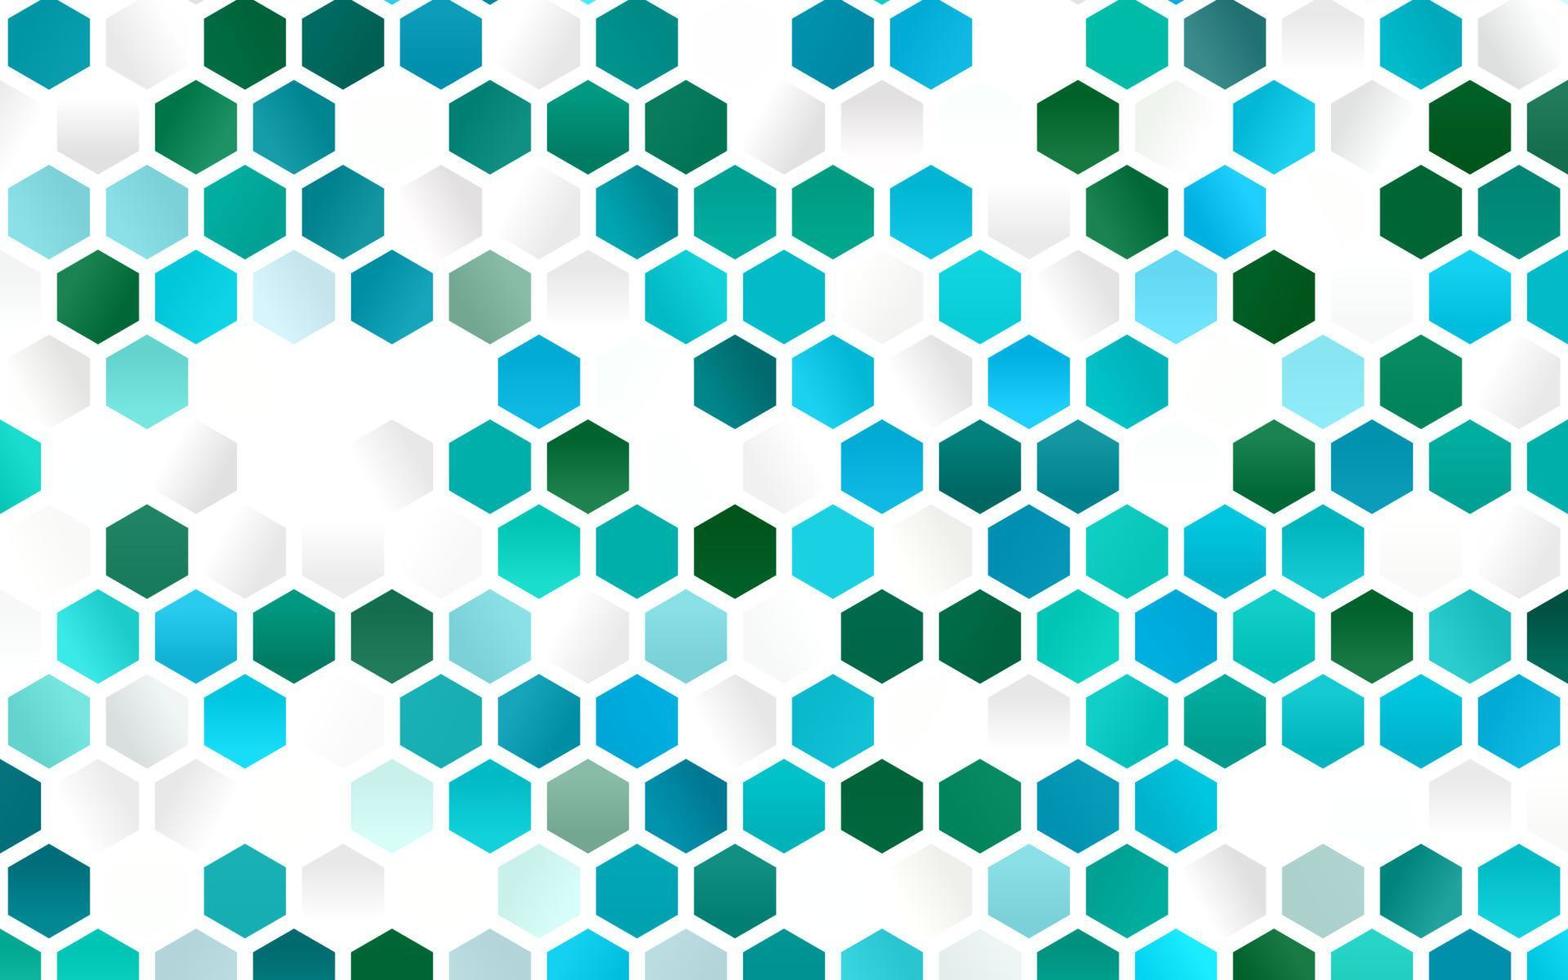 patrón de vector azul claro, verde con hexágonos de colores.